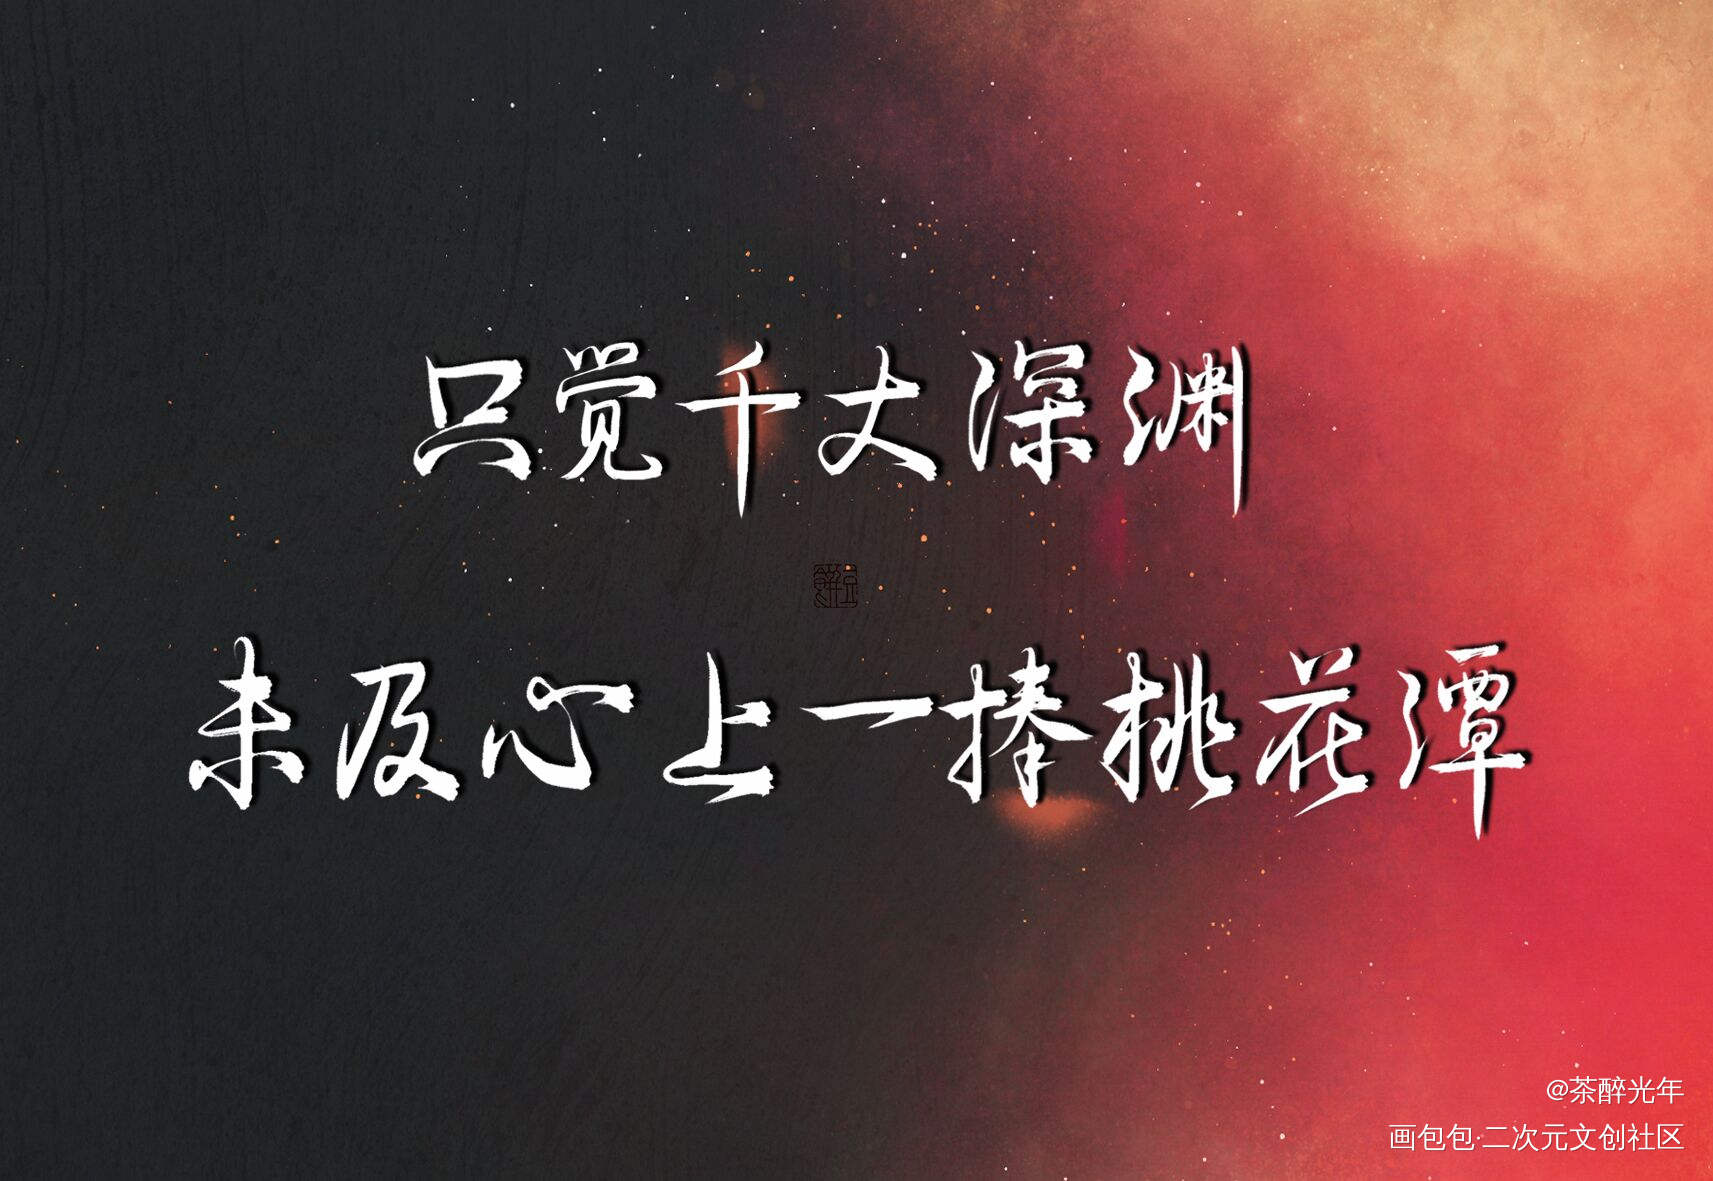 六爻_六爻严争鸣程潜字体设计见字如晤priest绘画作品